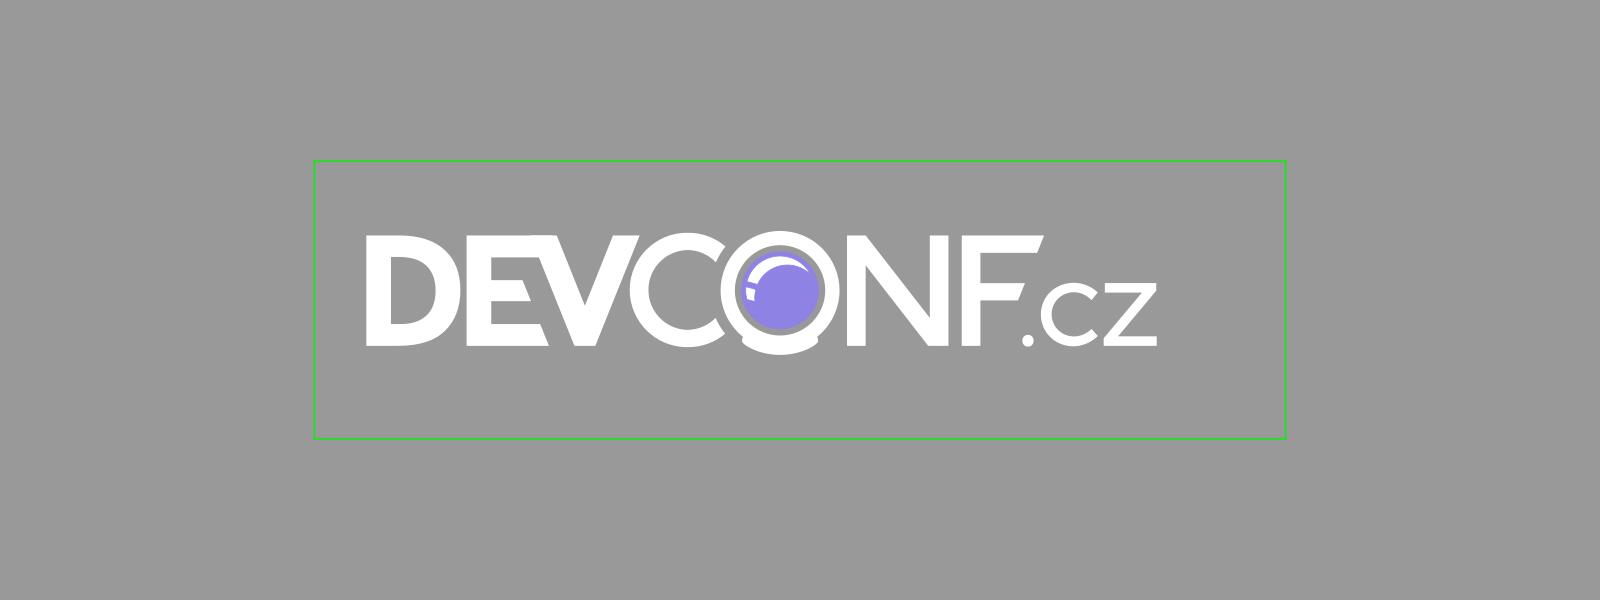 DevConf. CZ 2022 tendrá lugar el 28 y 29 de enero